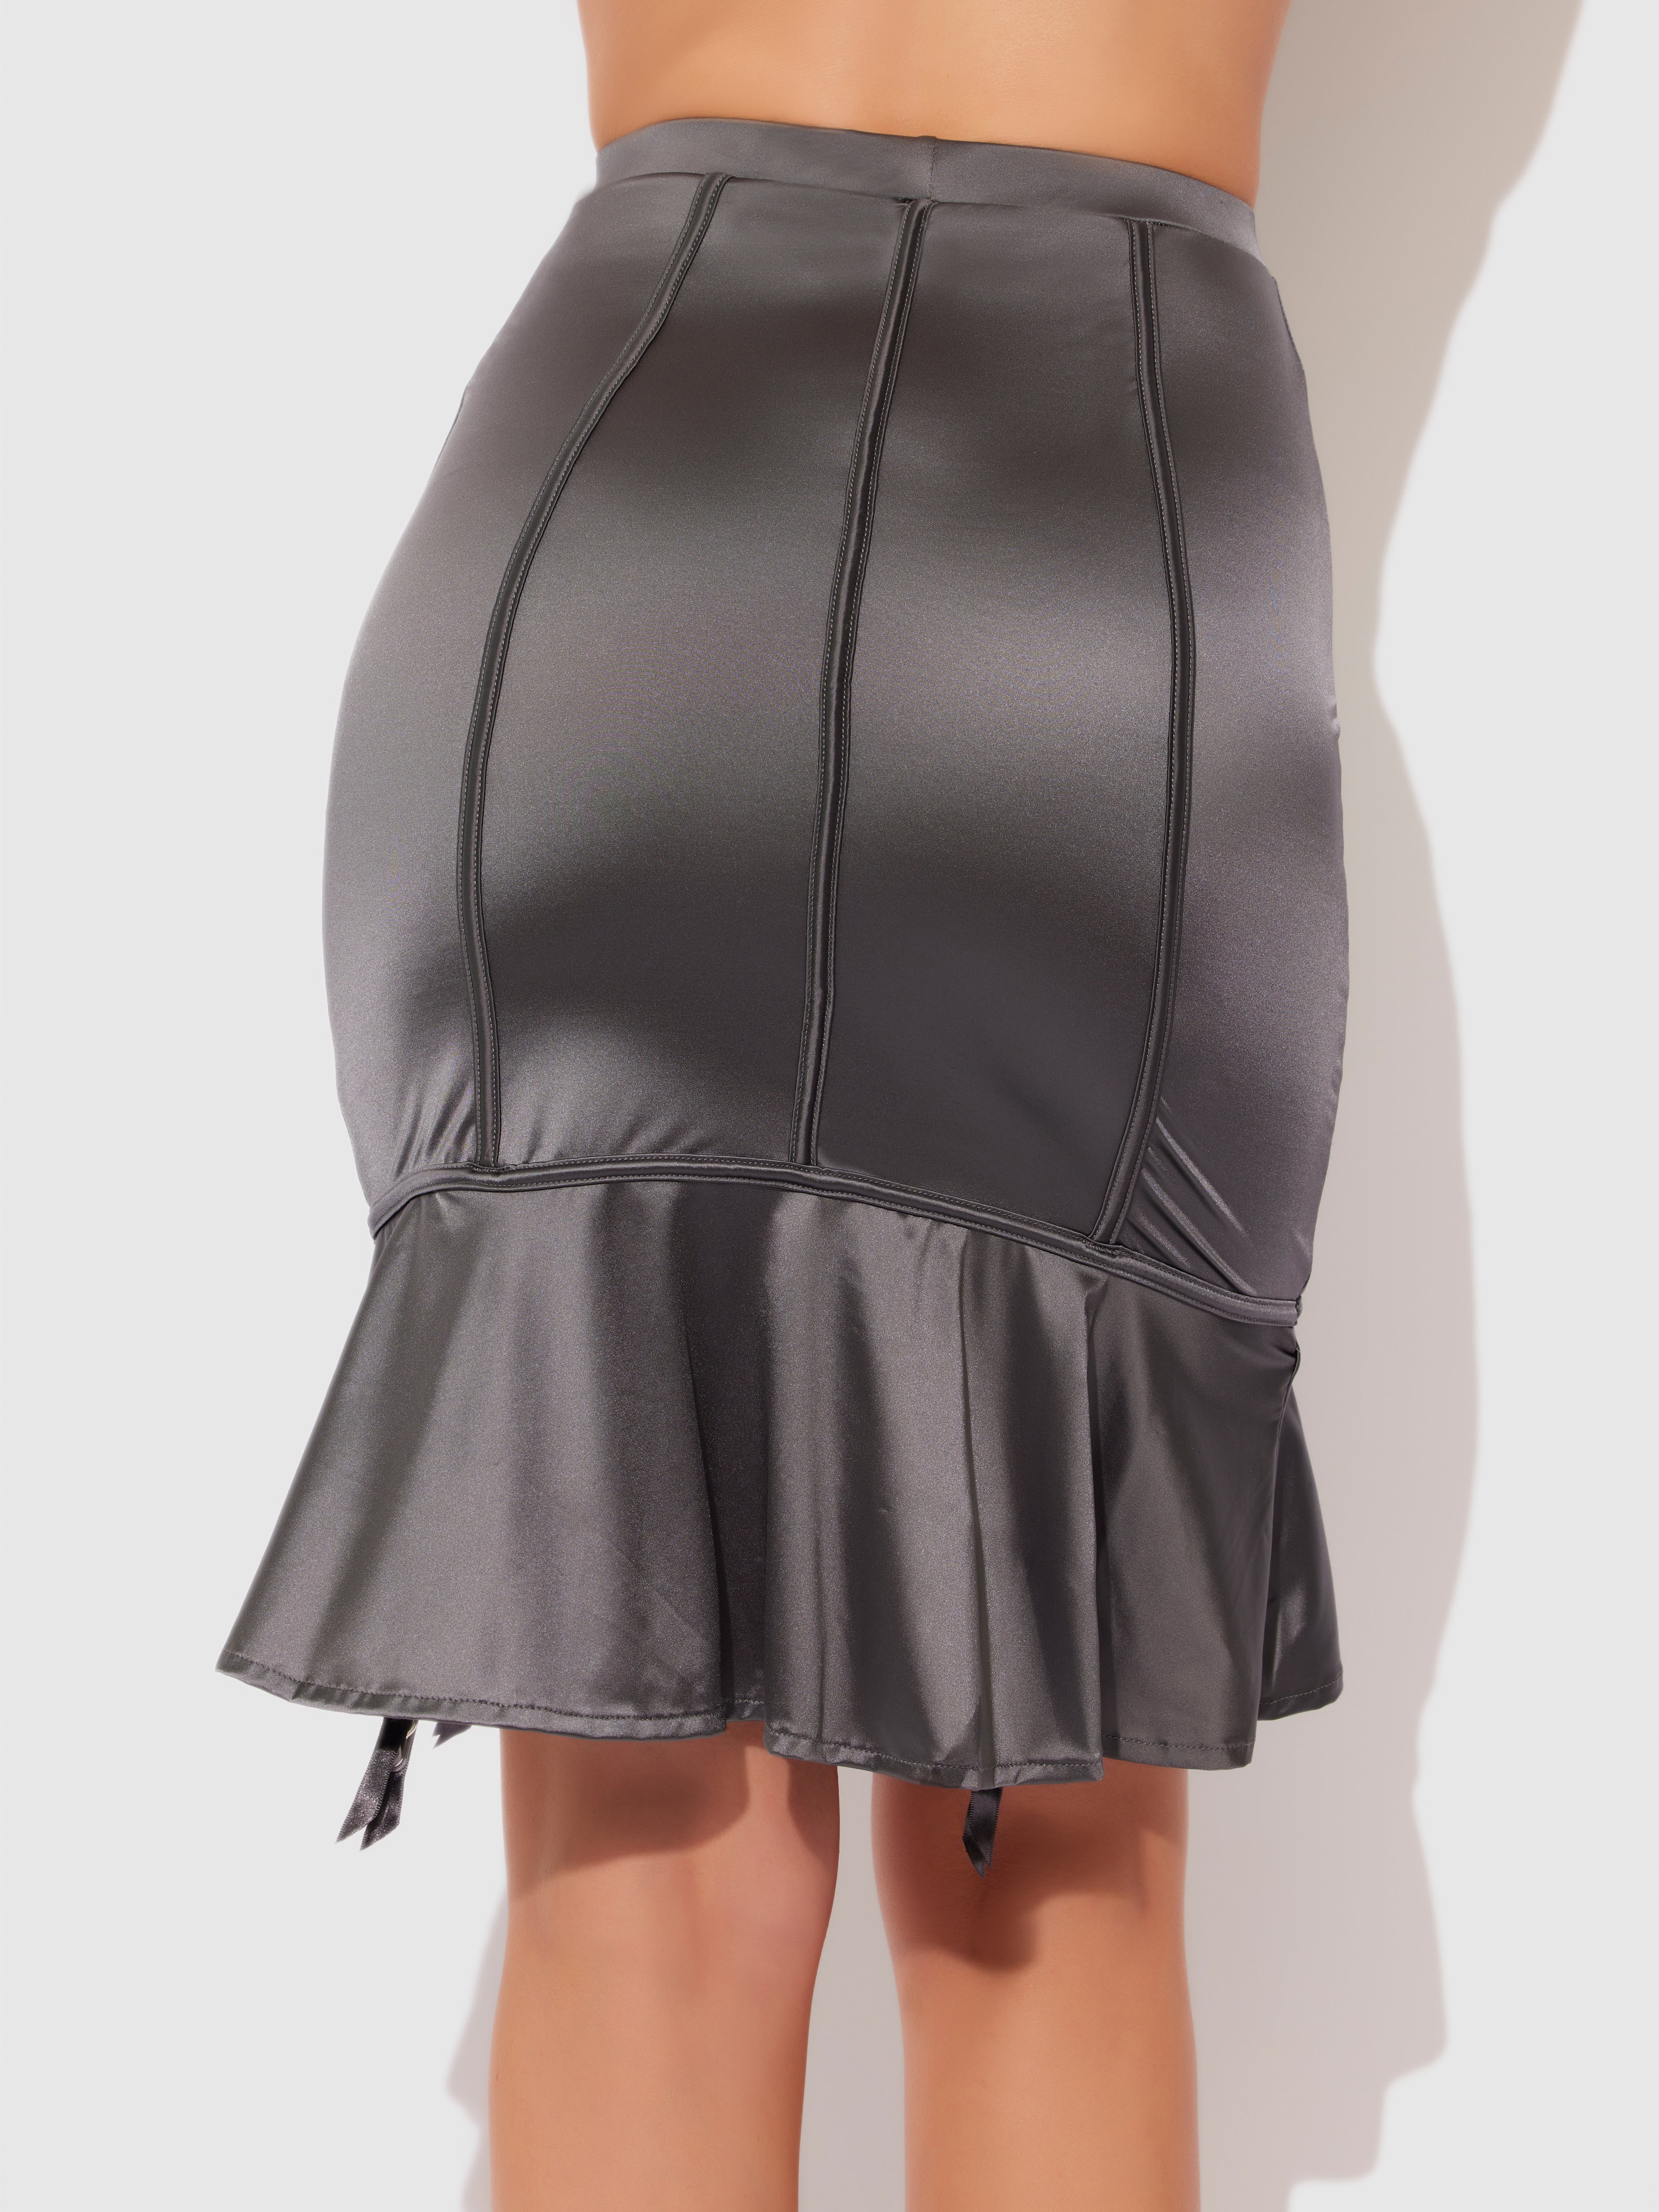 Neev Oil Slick Garter Half Slip Skirt - Fredericks of Hollywood